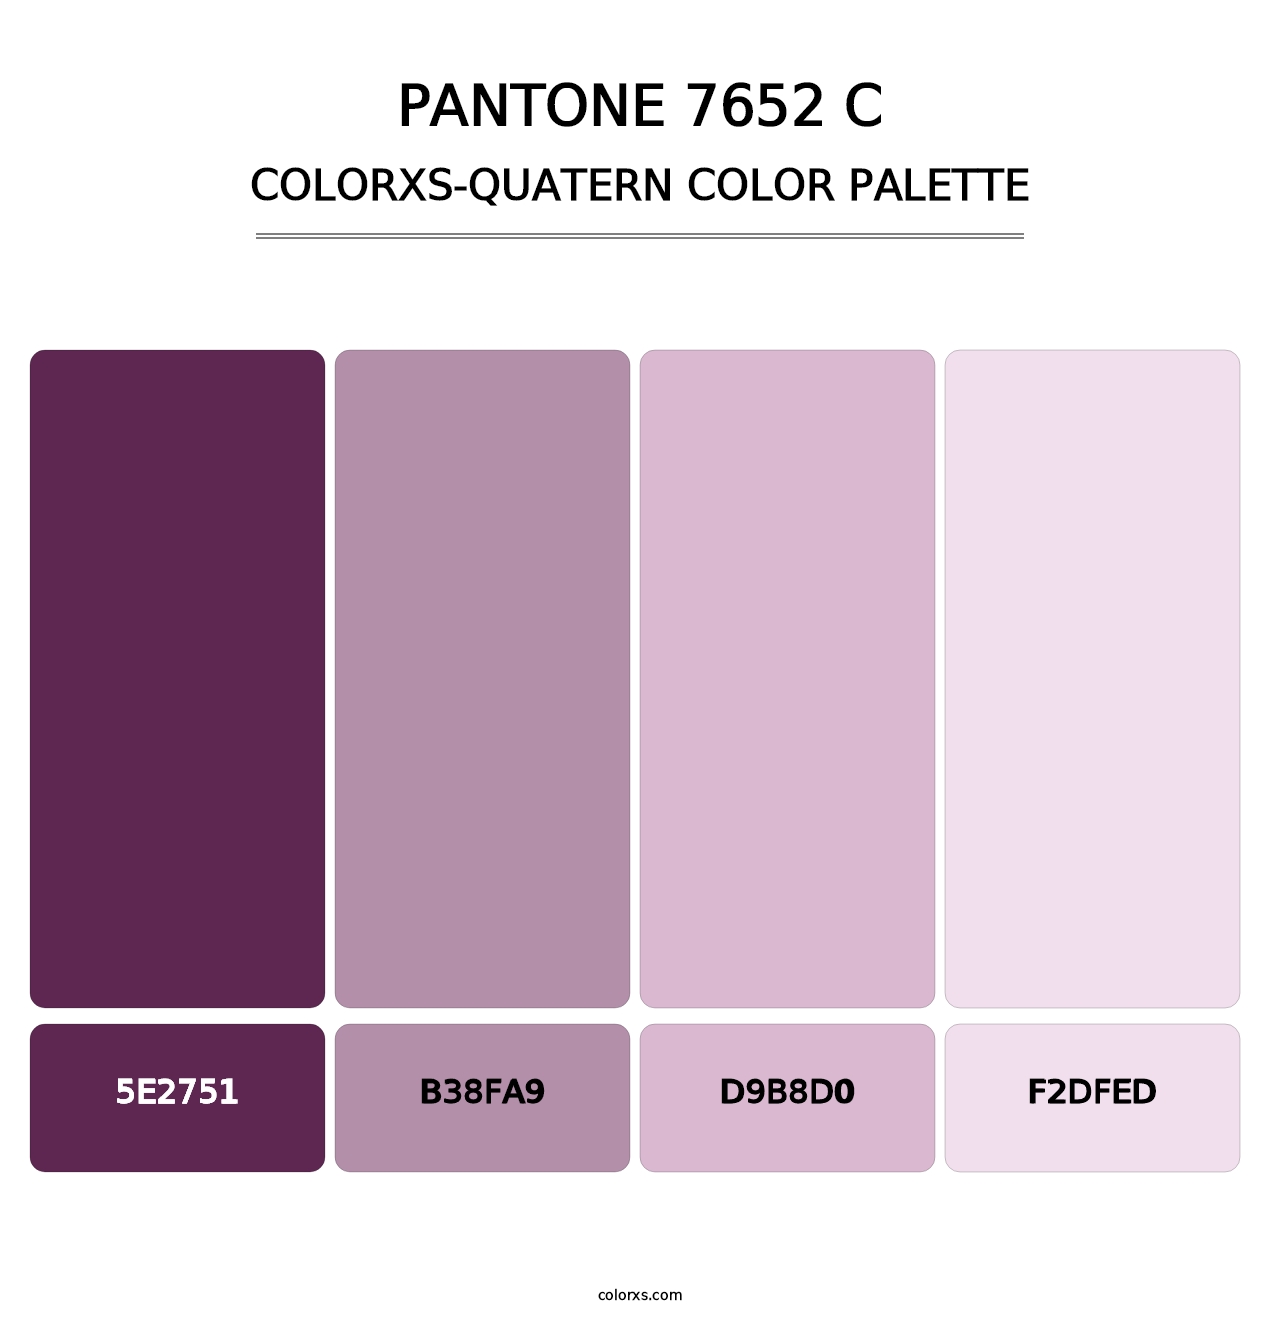 PANTONE 7652 C - Colorxs Quatern Palette